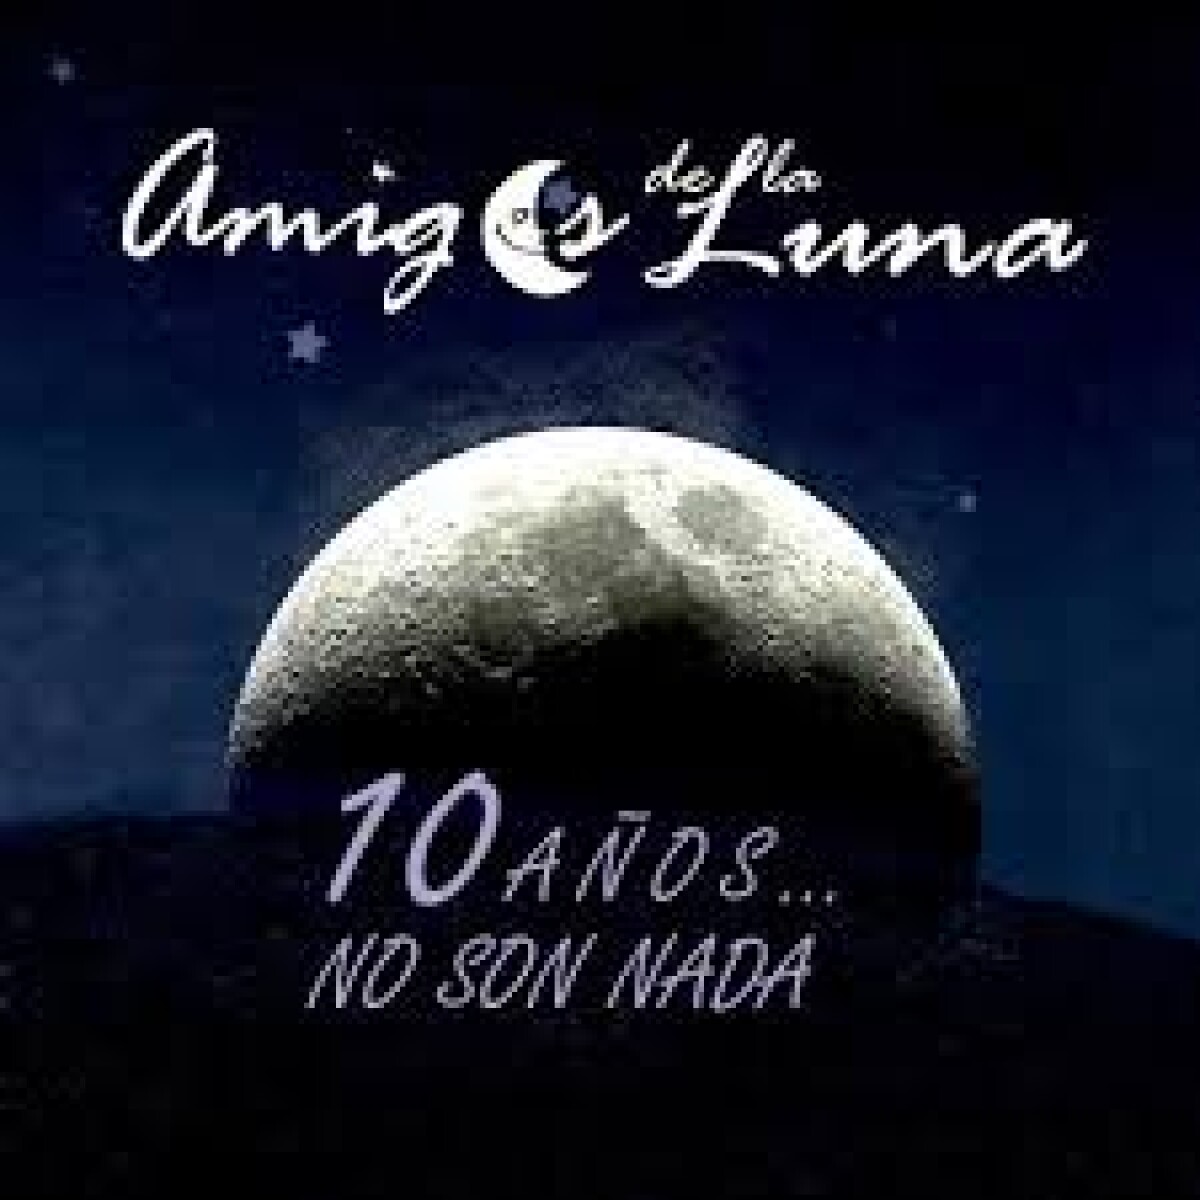 (l) Amigos De La Luna - 10 Aã‘os No Son Nada - Cd 